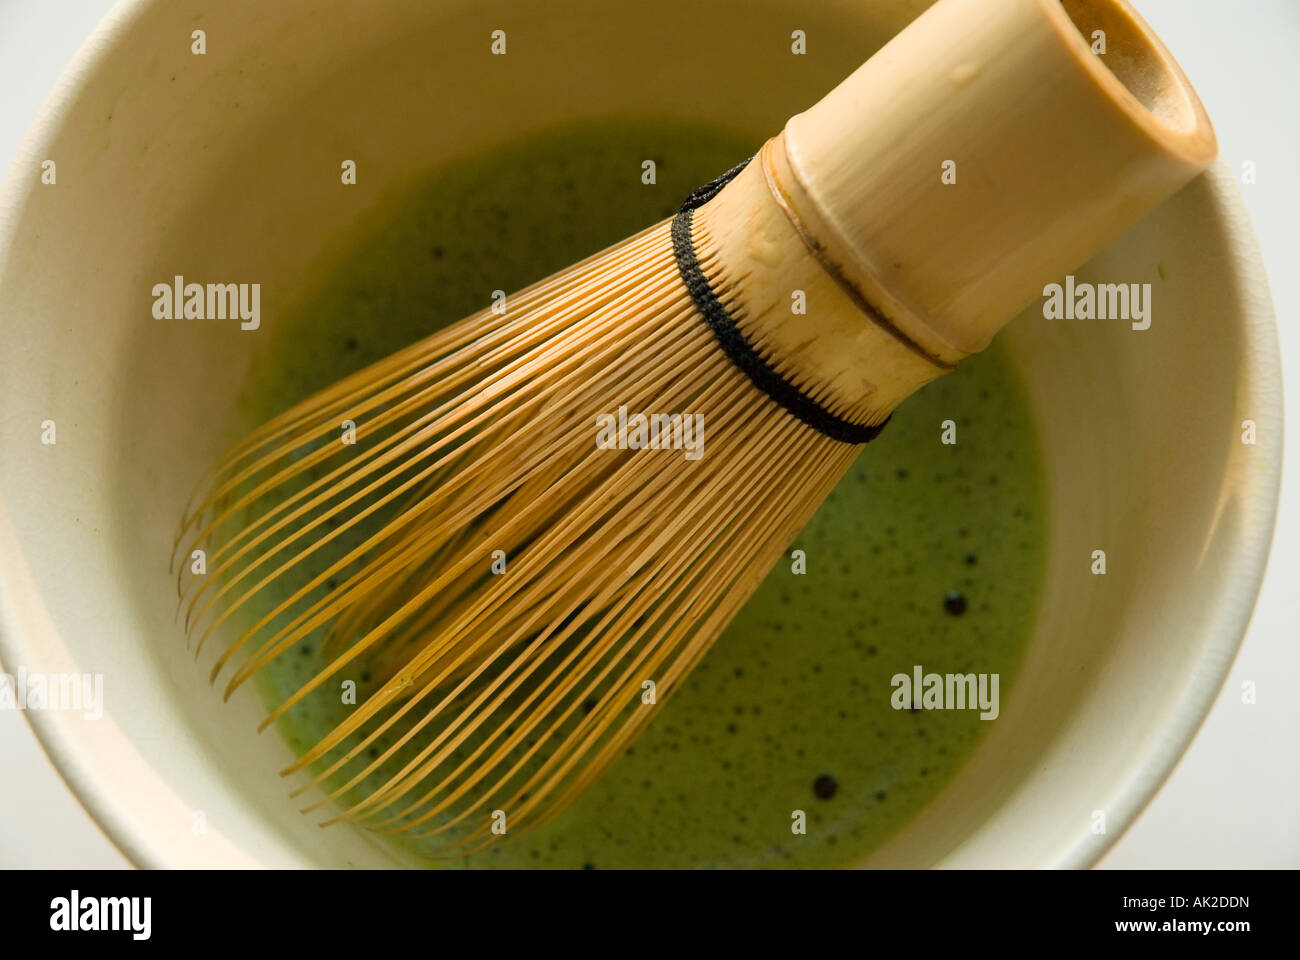 Ein Bambusschläger oder eine Jagd ruht in schaumhaltigem grünem Tee in einer cremefarbenen Teeschale, während Matcha zubereitet wird. Stockfoto